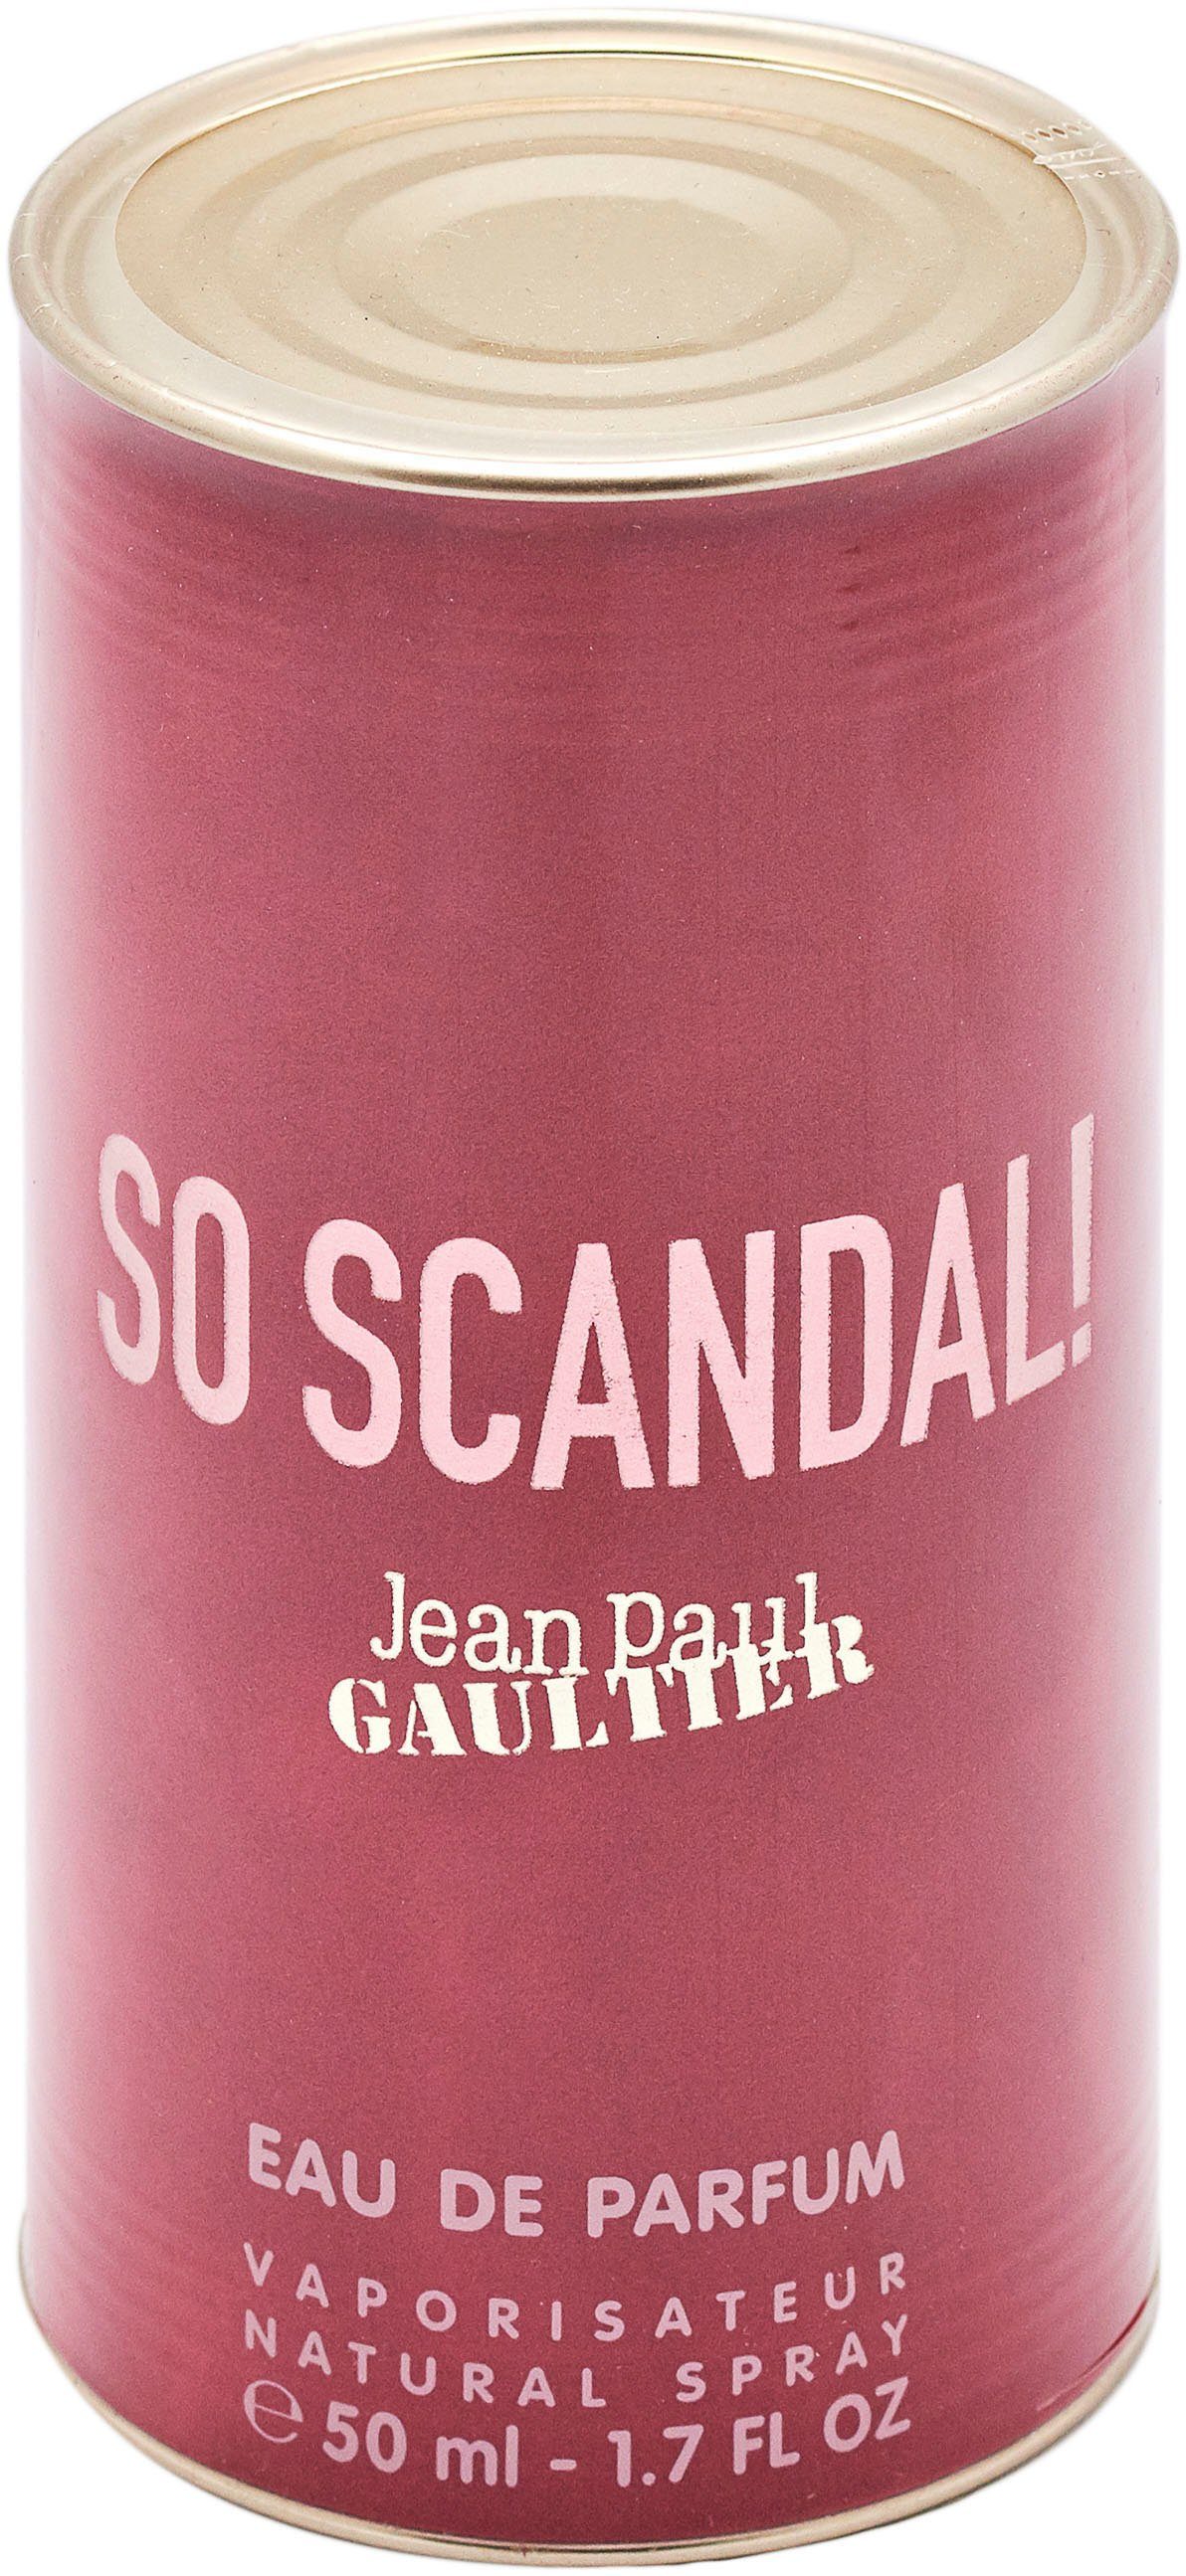 Scandal! GAULTIER PAUL JEAN Eau Parfum So de